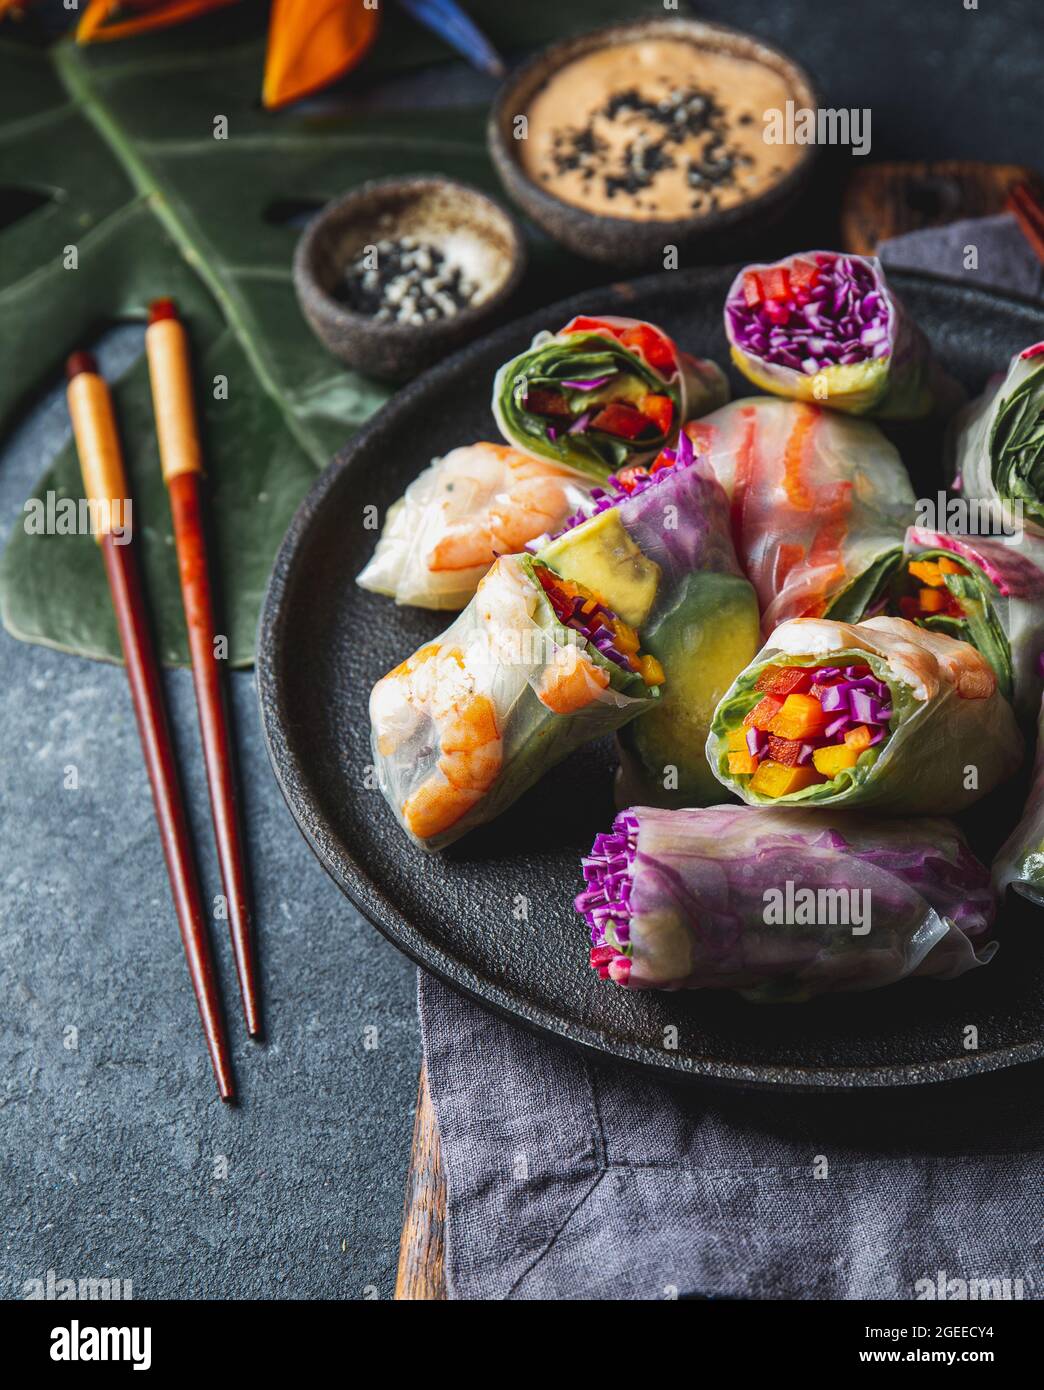 Rouleaux de printemps avec légumes et crevettes. Plat vietnamien Banque D'Images